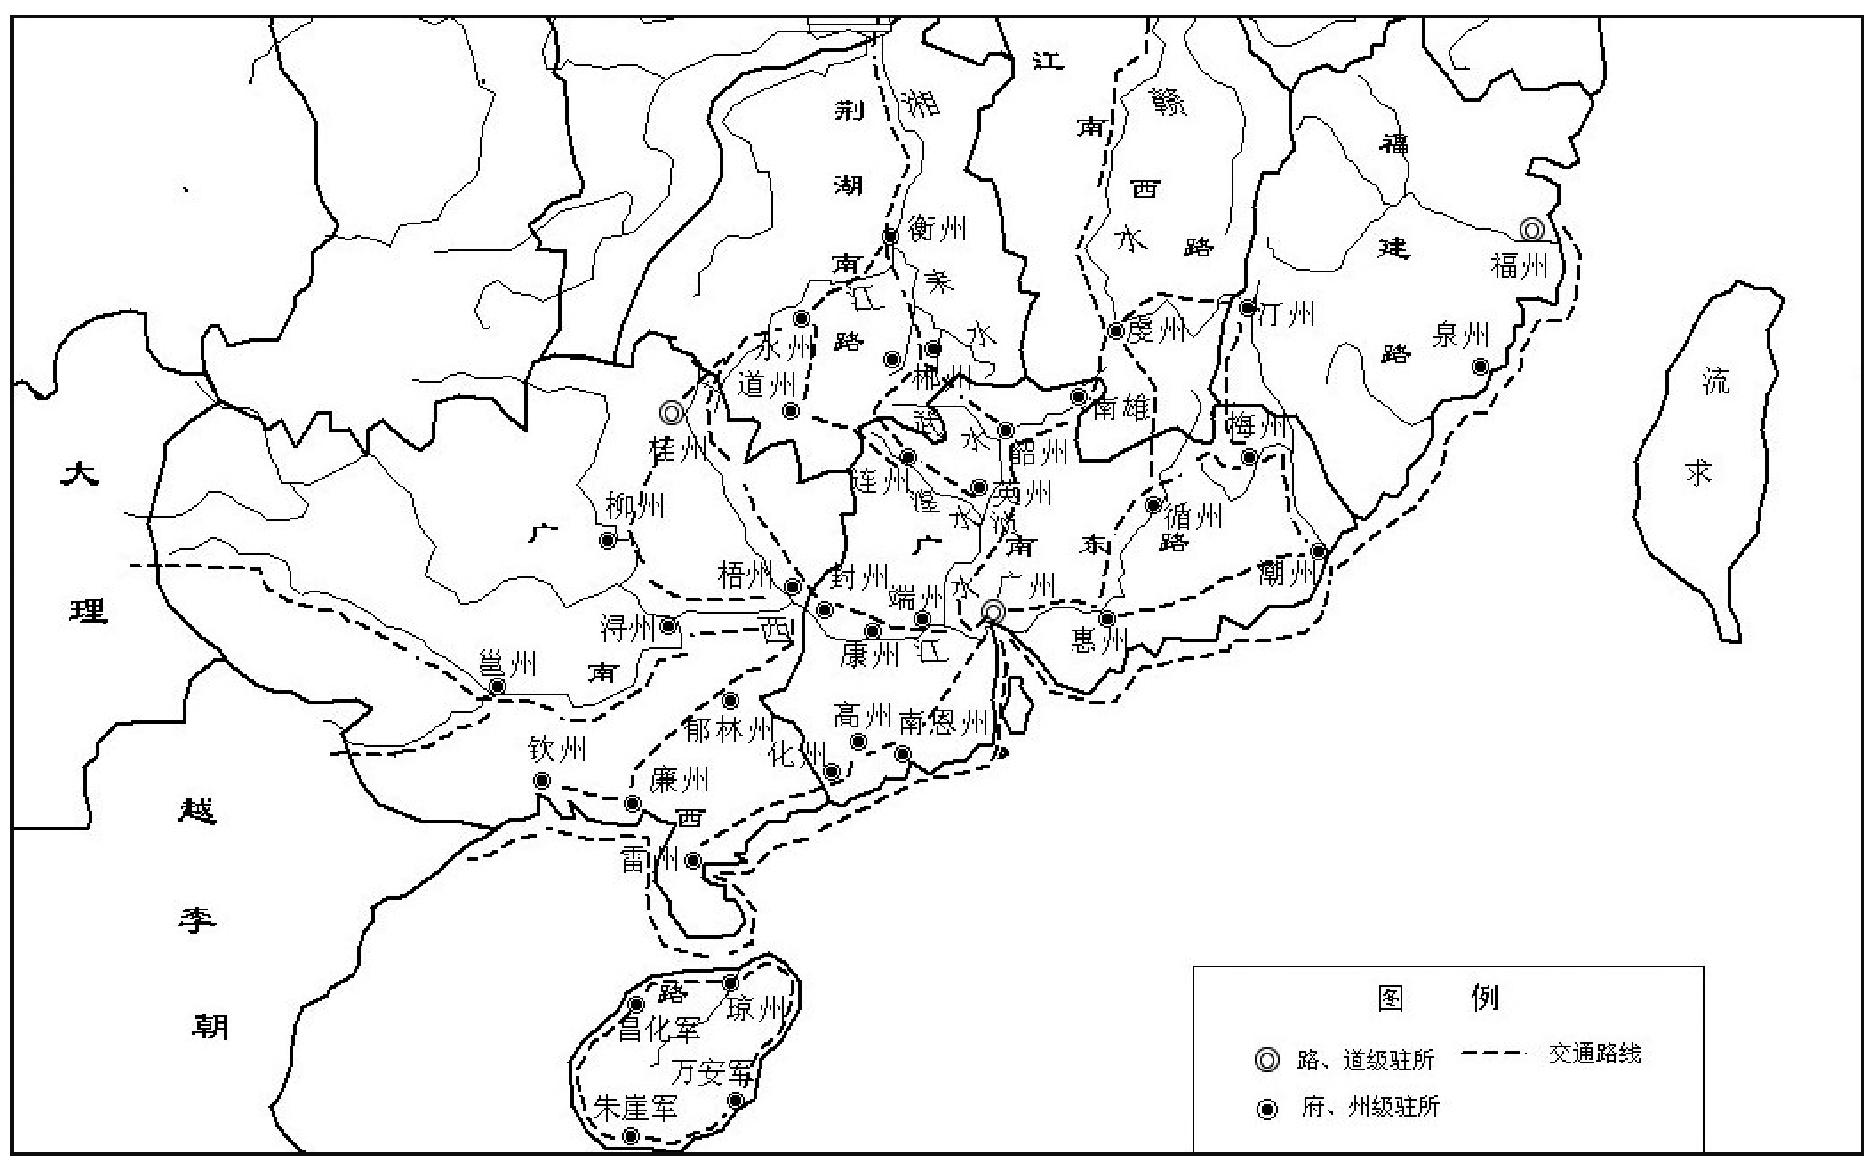 二、宋代以广州为中心的交通网